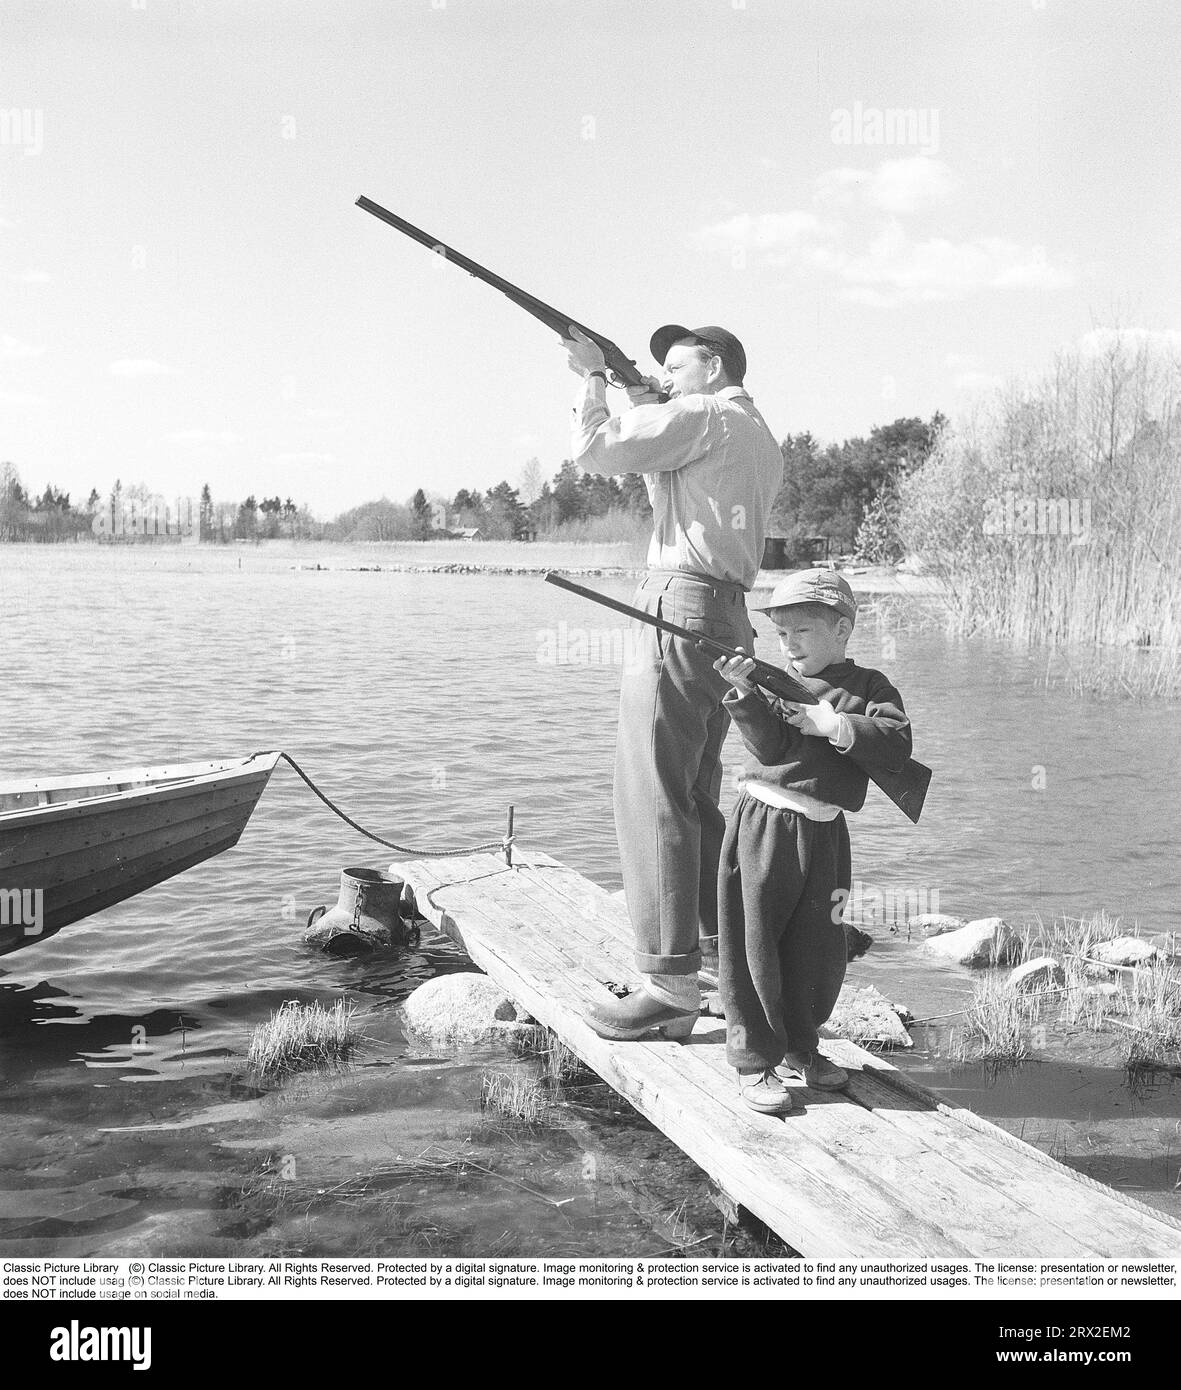 Père et fils dans les années 1950 Ils se tiennent debout avec leurs fusils sur un quai près d'un lac avec leurs fusils de chasse prêts. Suède 1956. Kristoffersson réf. BX77-12 Banque D'Images